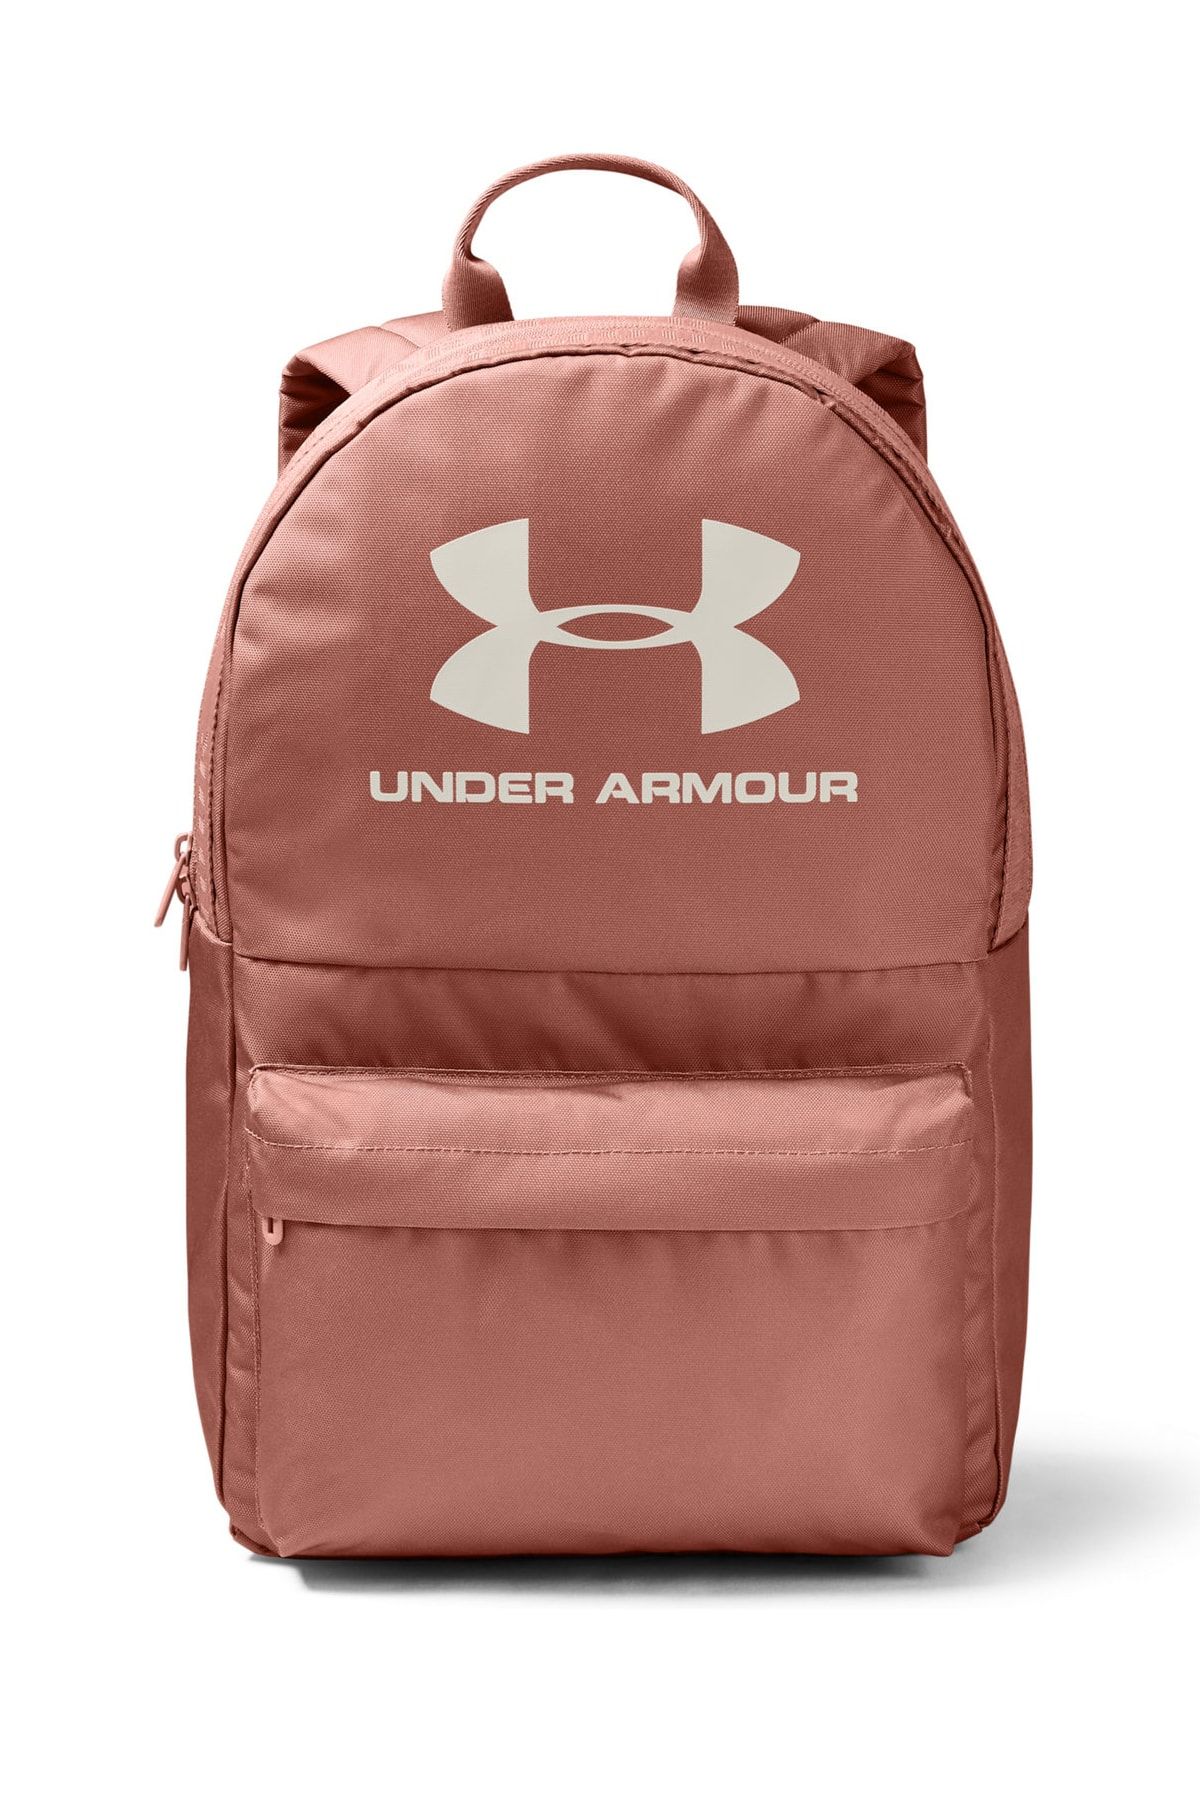 Under Armour Unisex Spor Çantası - UA Loudon Backpack - 1342654-226